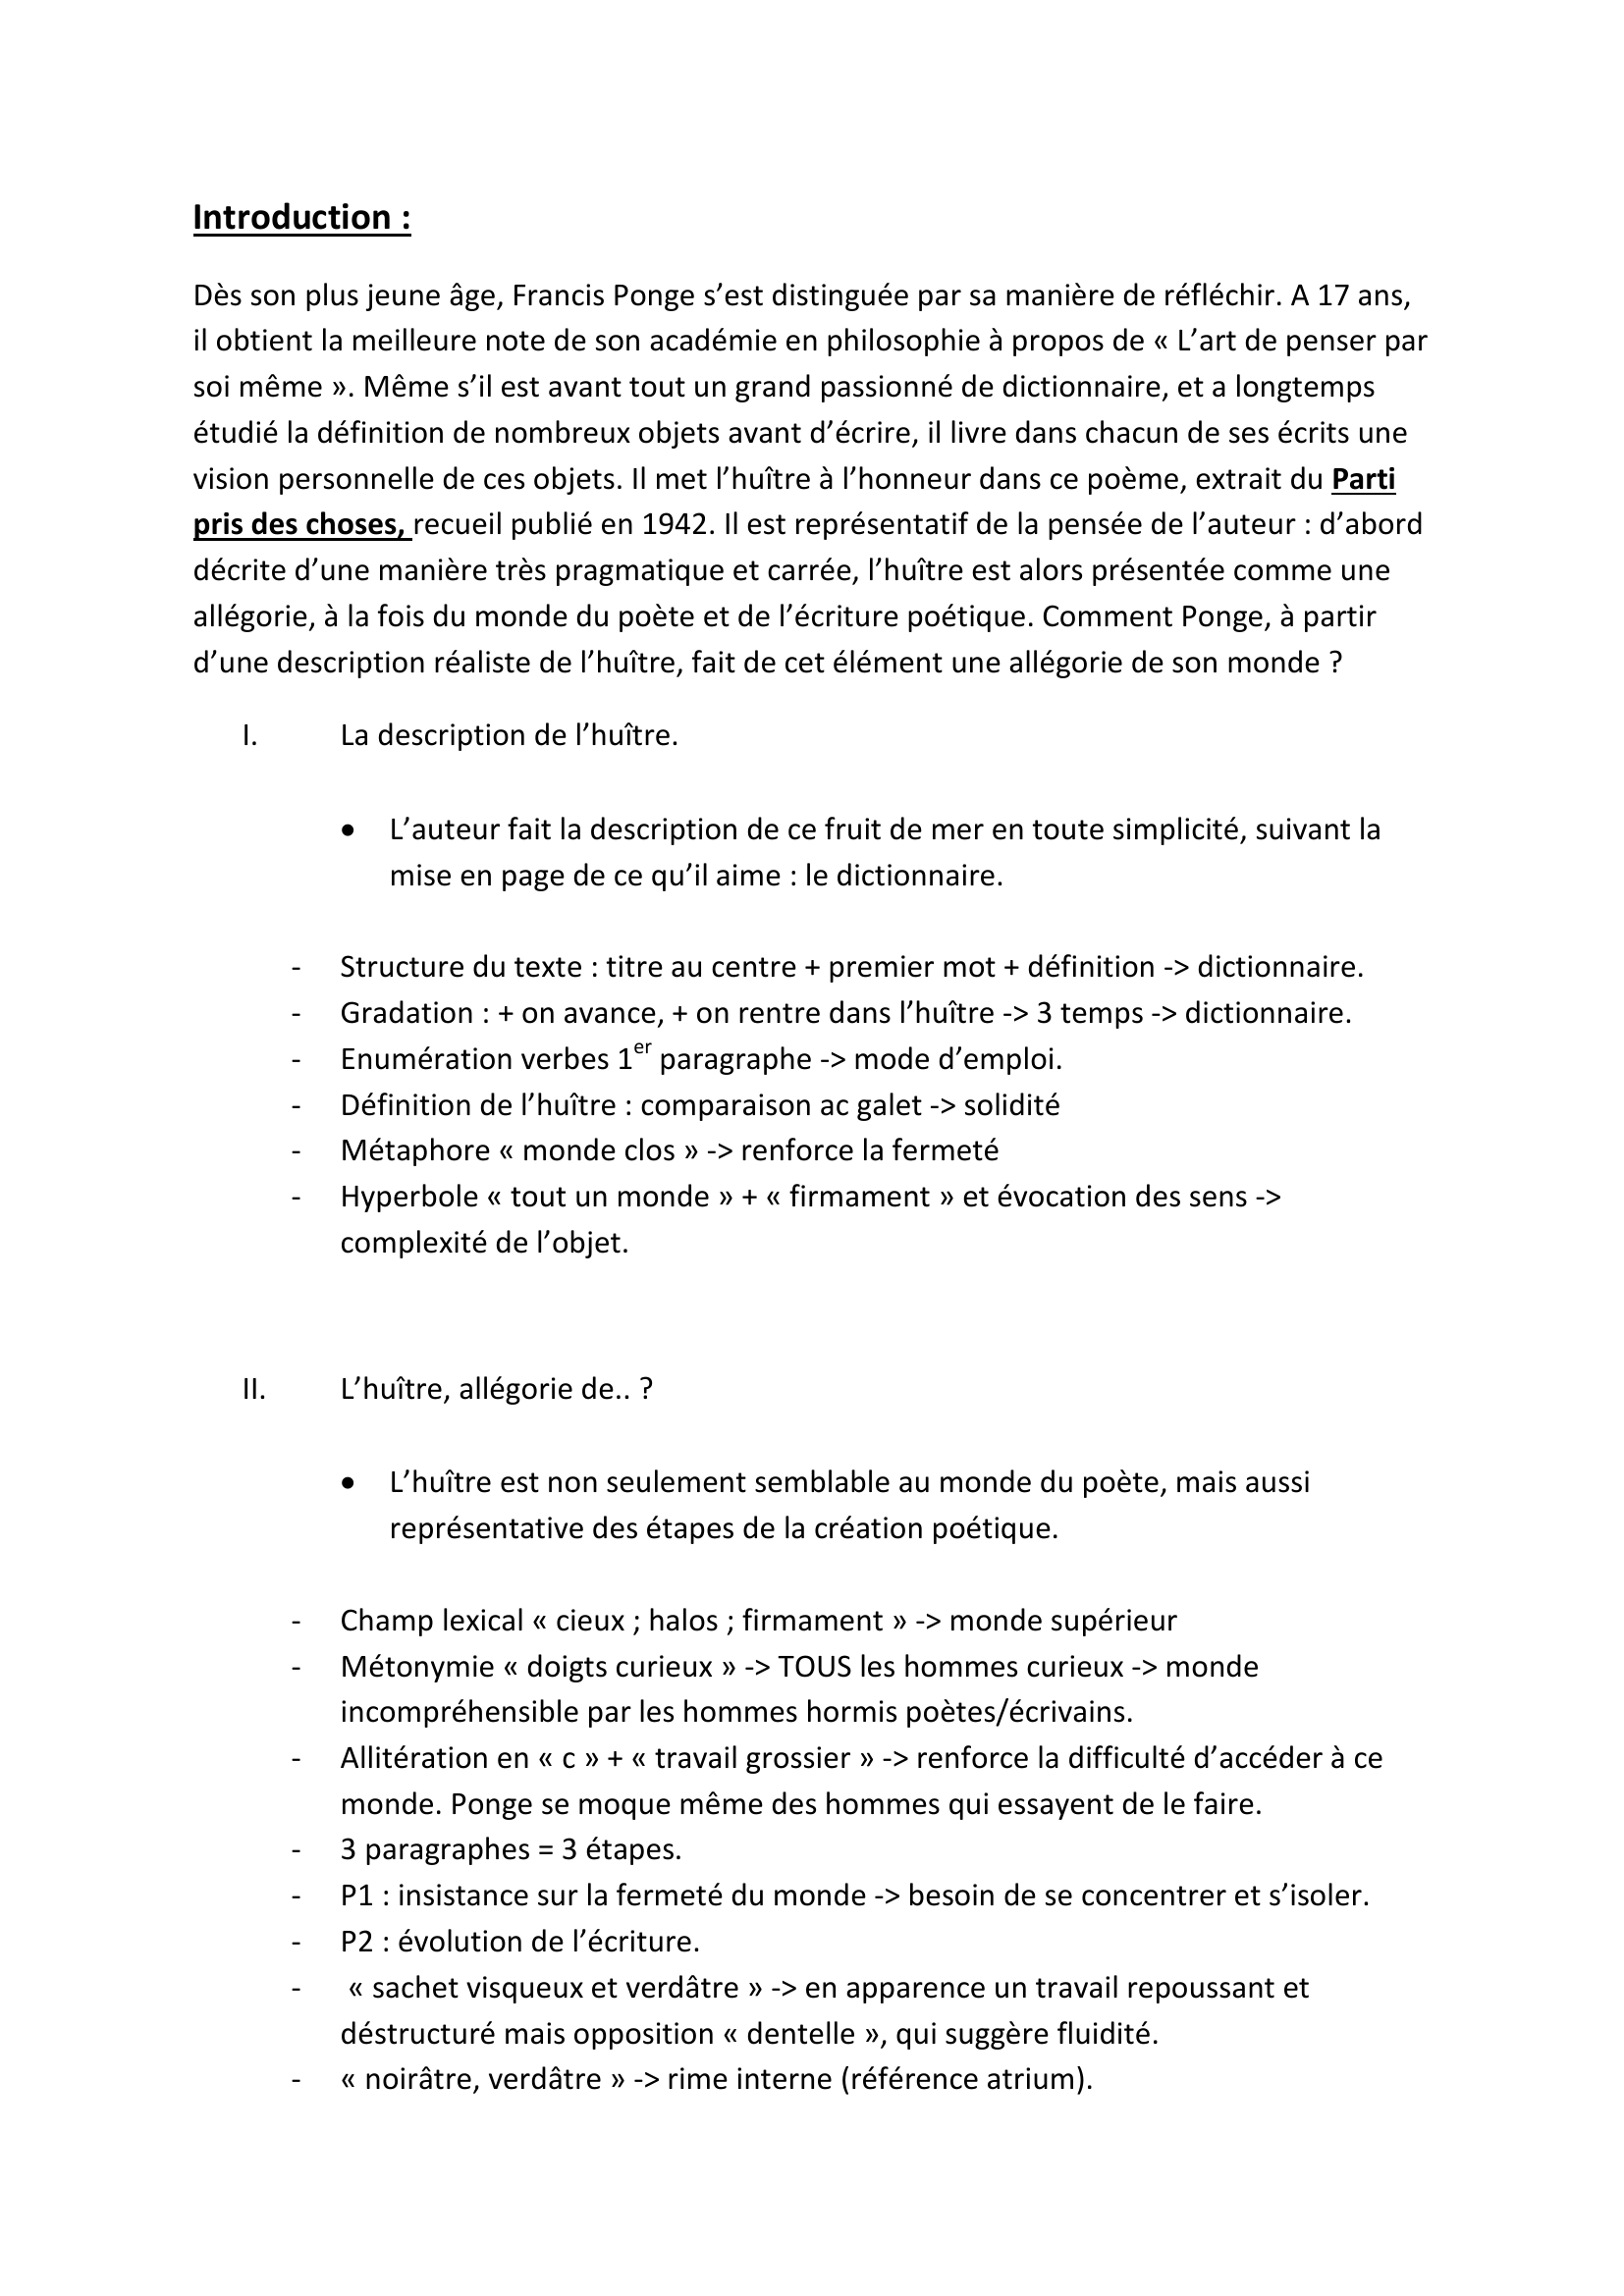 Prévisualisation du document « L'huître », Francis Ponge